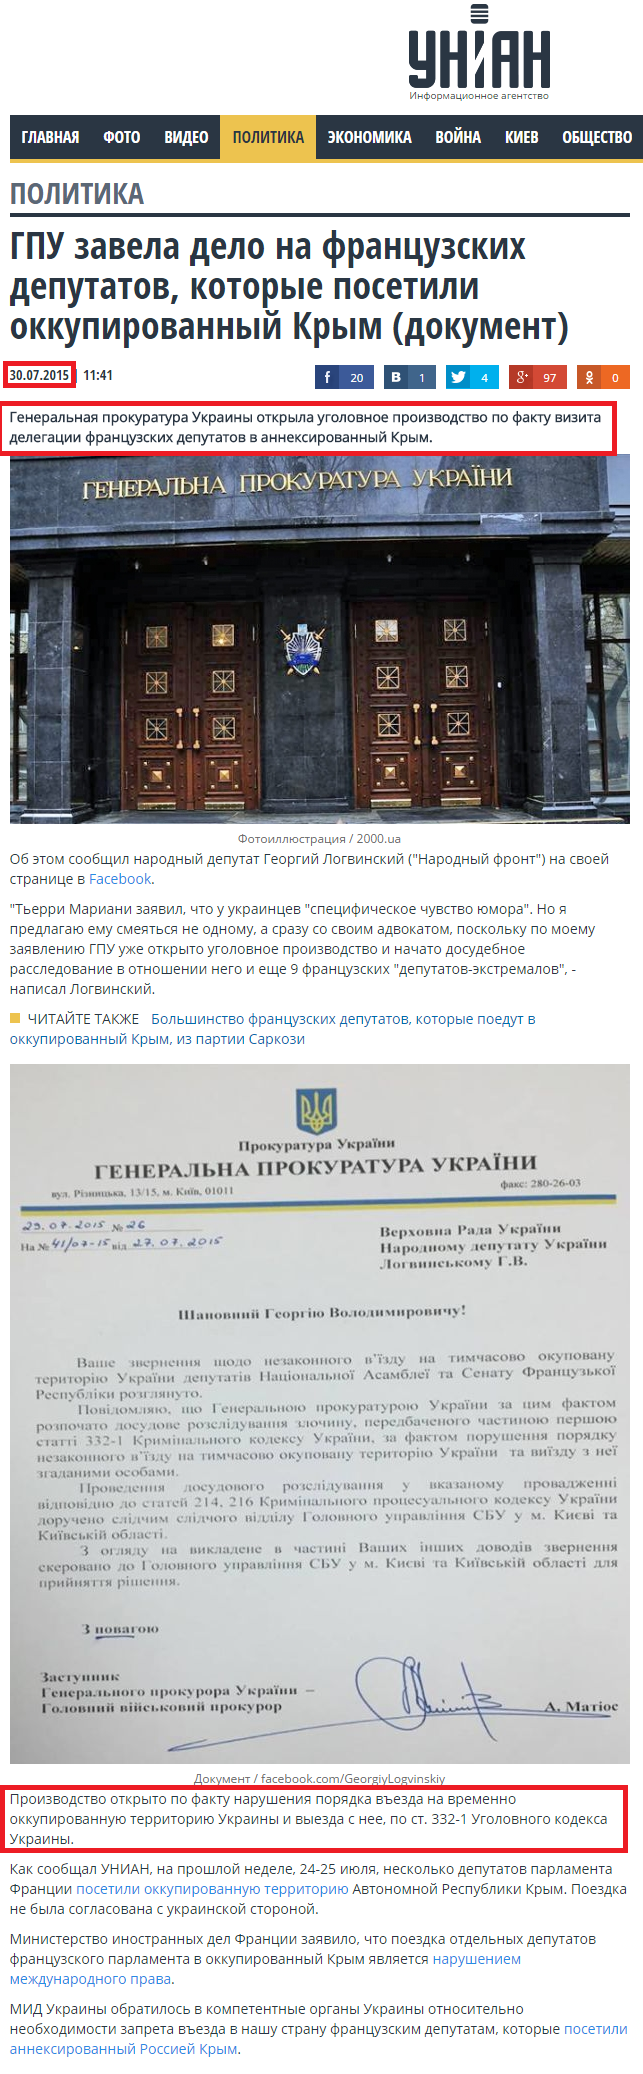 http://www.unian.net/politics/1106377-gpu-otkryila-delo-protiv-frantsuzskih-deputatov-kotoryie-posetili-okkupirovannyiy-kryim-dokument.html